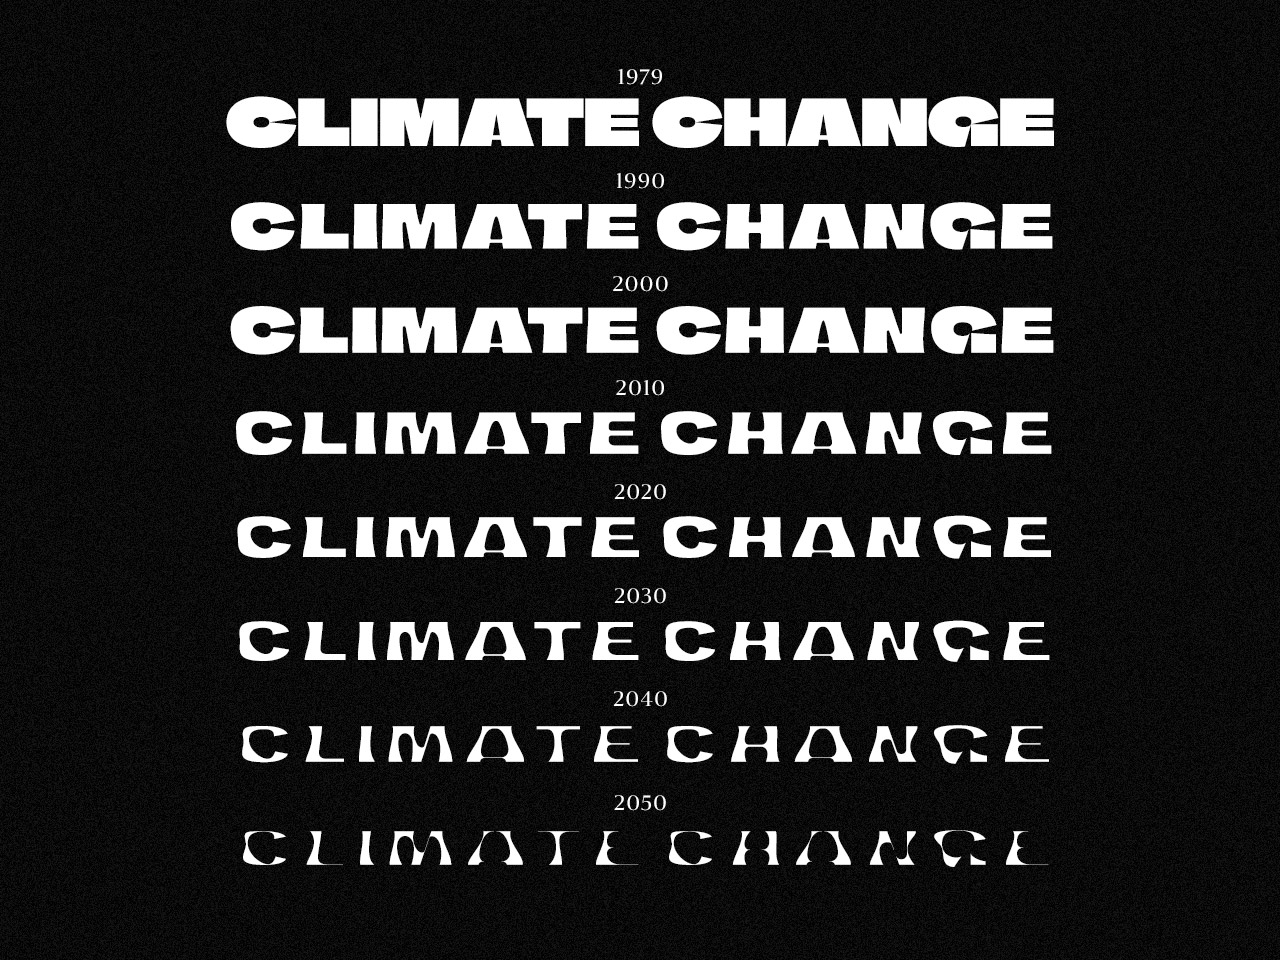 Das Wort "Climate Change" mehrmals untereinander stehend in abnehmender Strichstärke